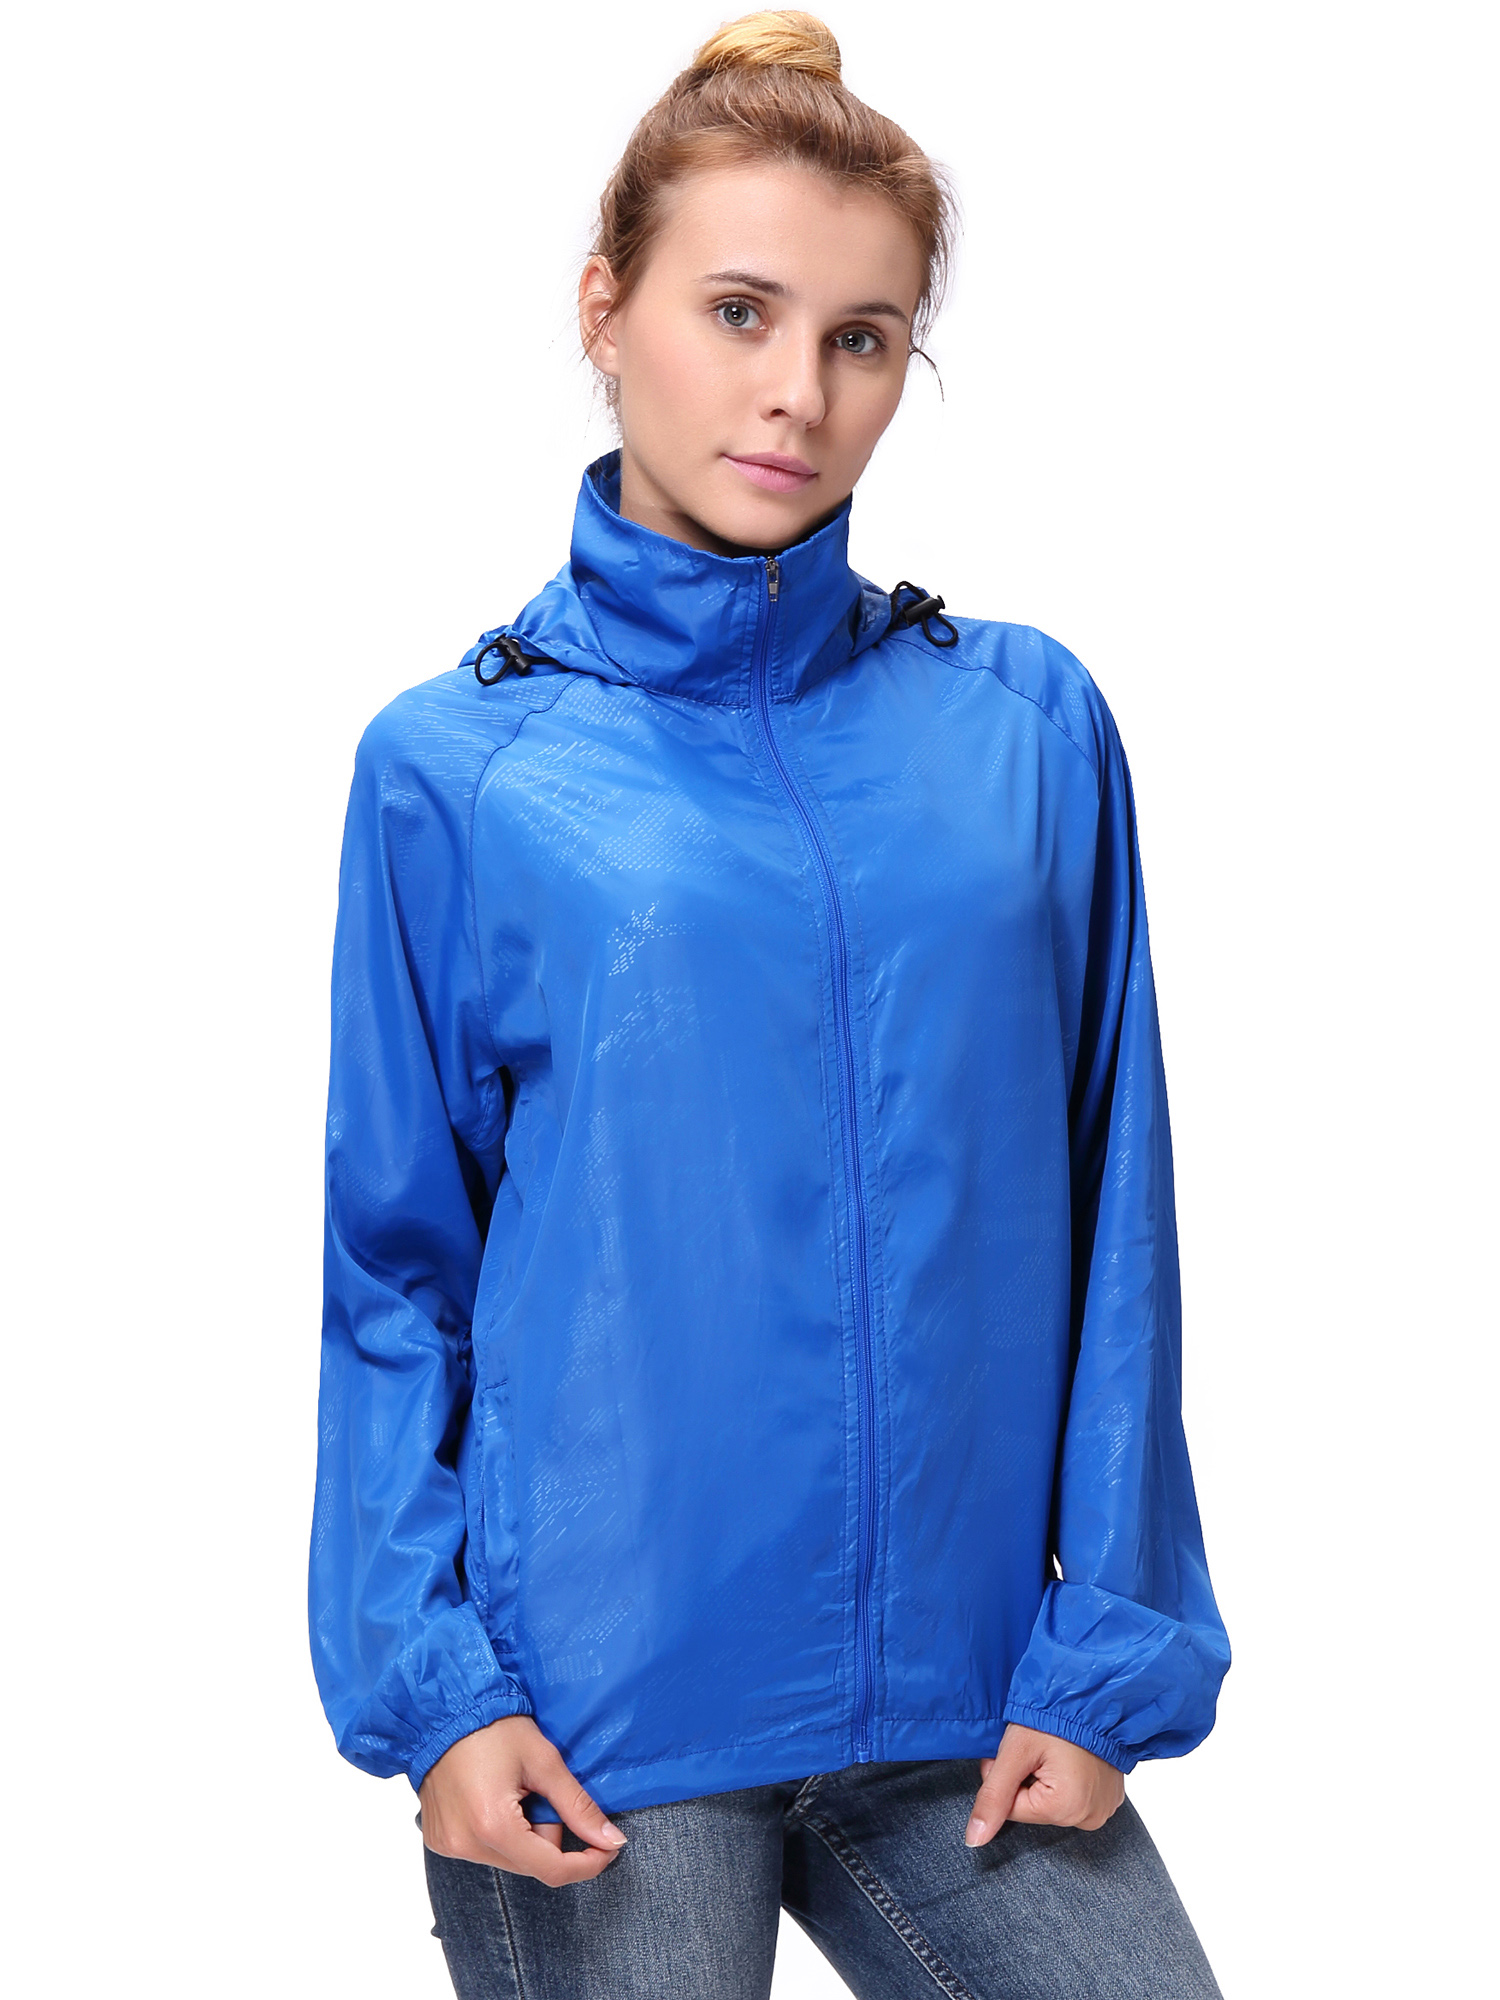 Fashion Womens/Mens Outdoor Lightweight windbreaker Jackets Waterproof Rain Coat Outwear Zip-Up Long Sleeve Hoodie Sport Windbreaker - image 5 of 9